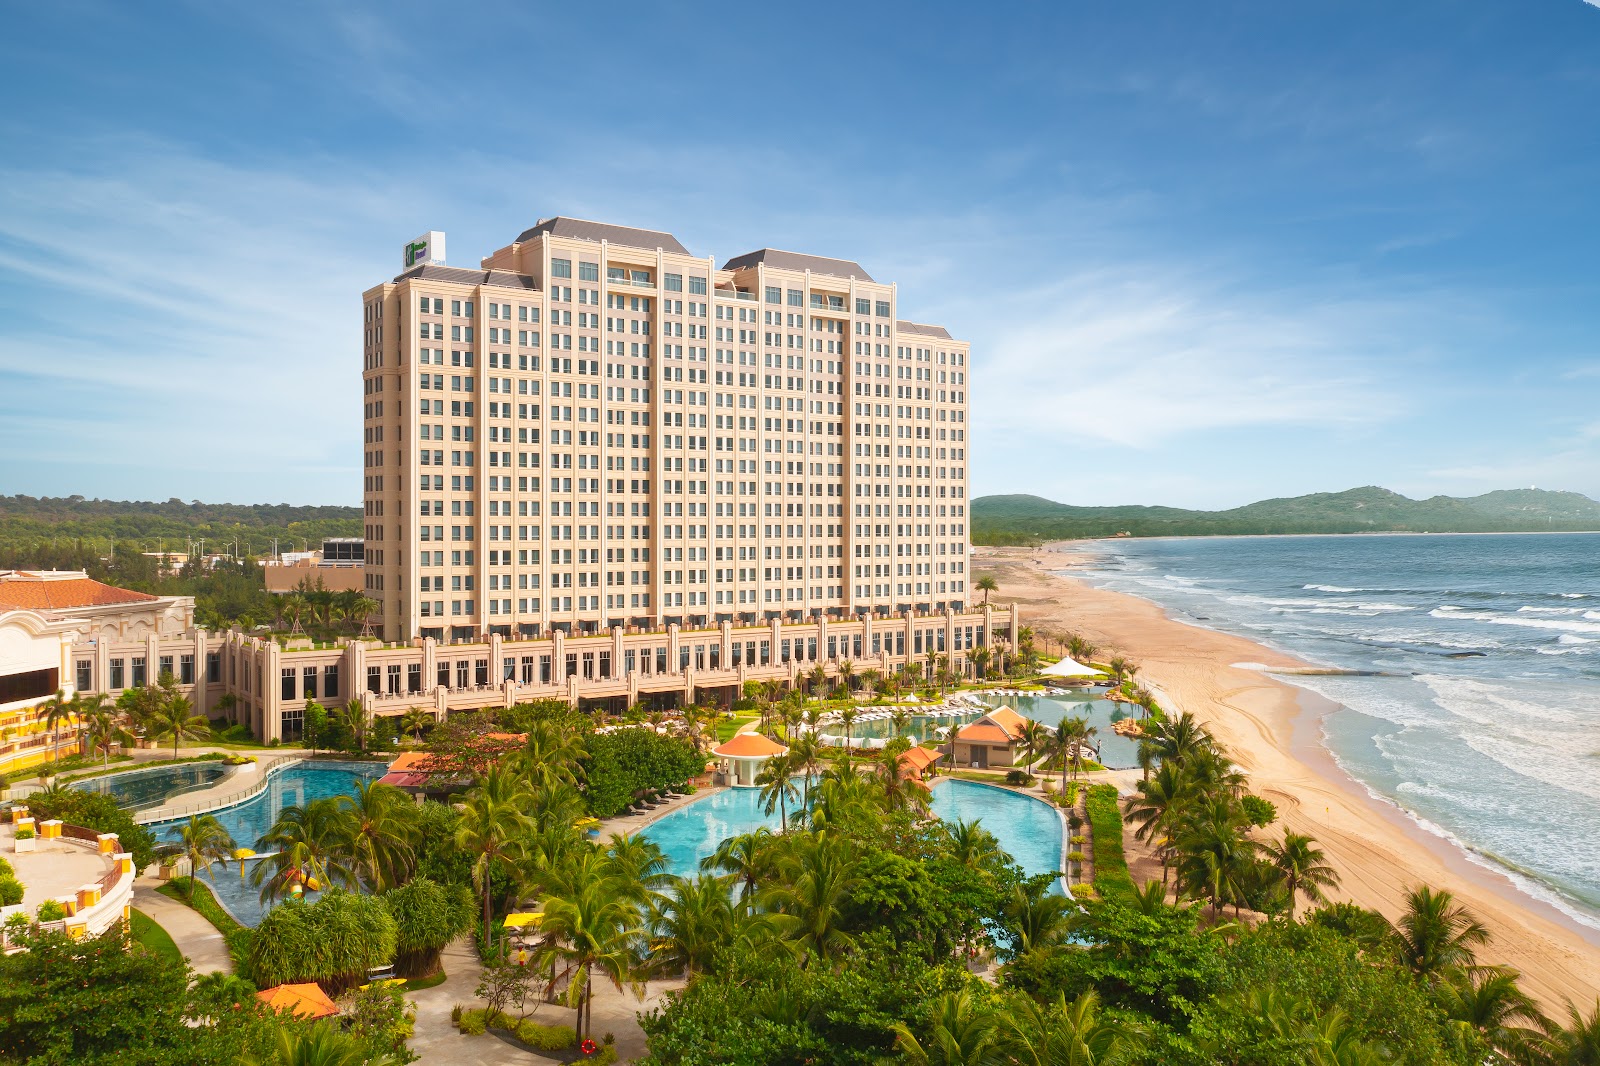 Φωτογραφία του Holiday Inn Resort beach με μακρά ευθεία ακτή